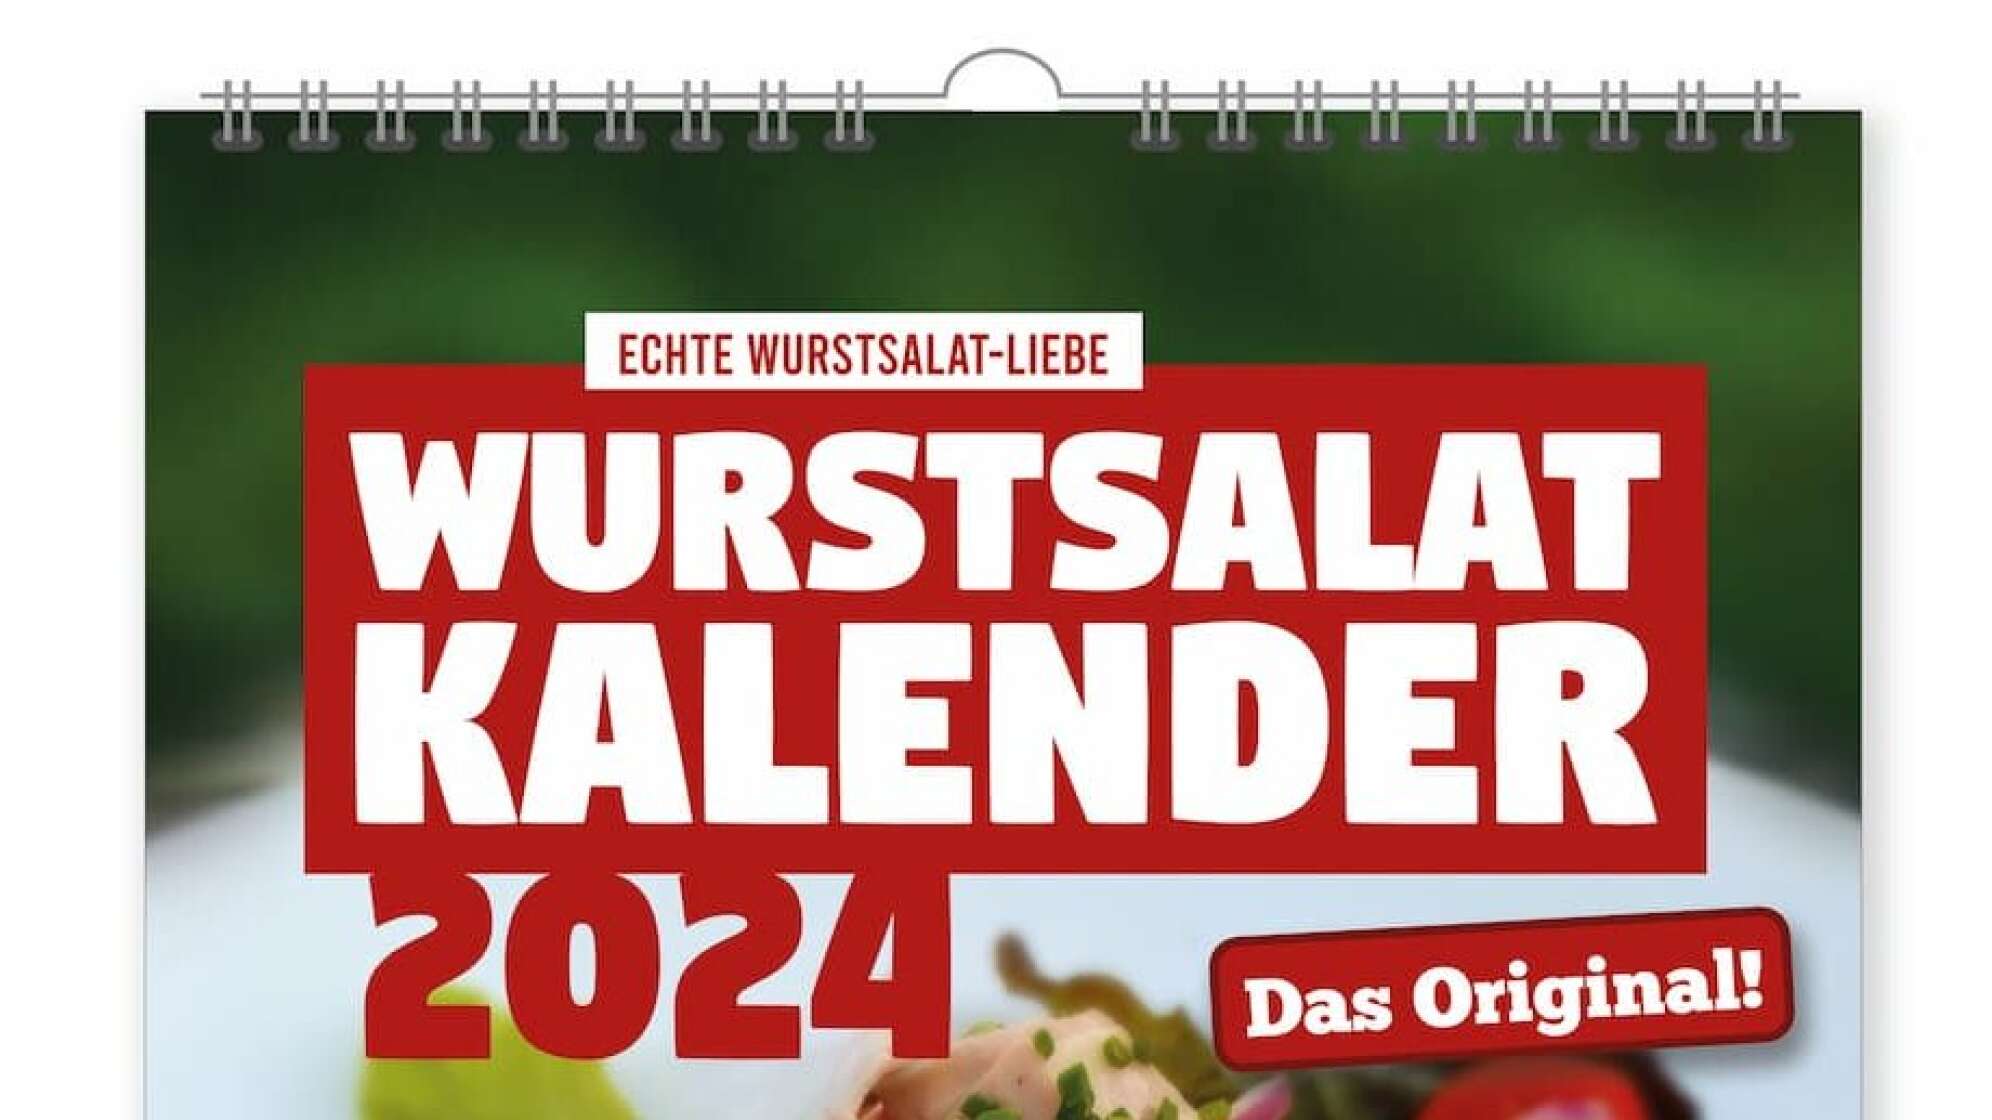 Wurstsalat-Kalender 2024